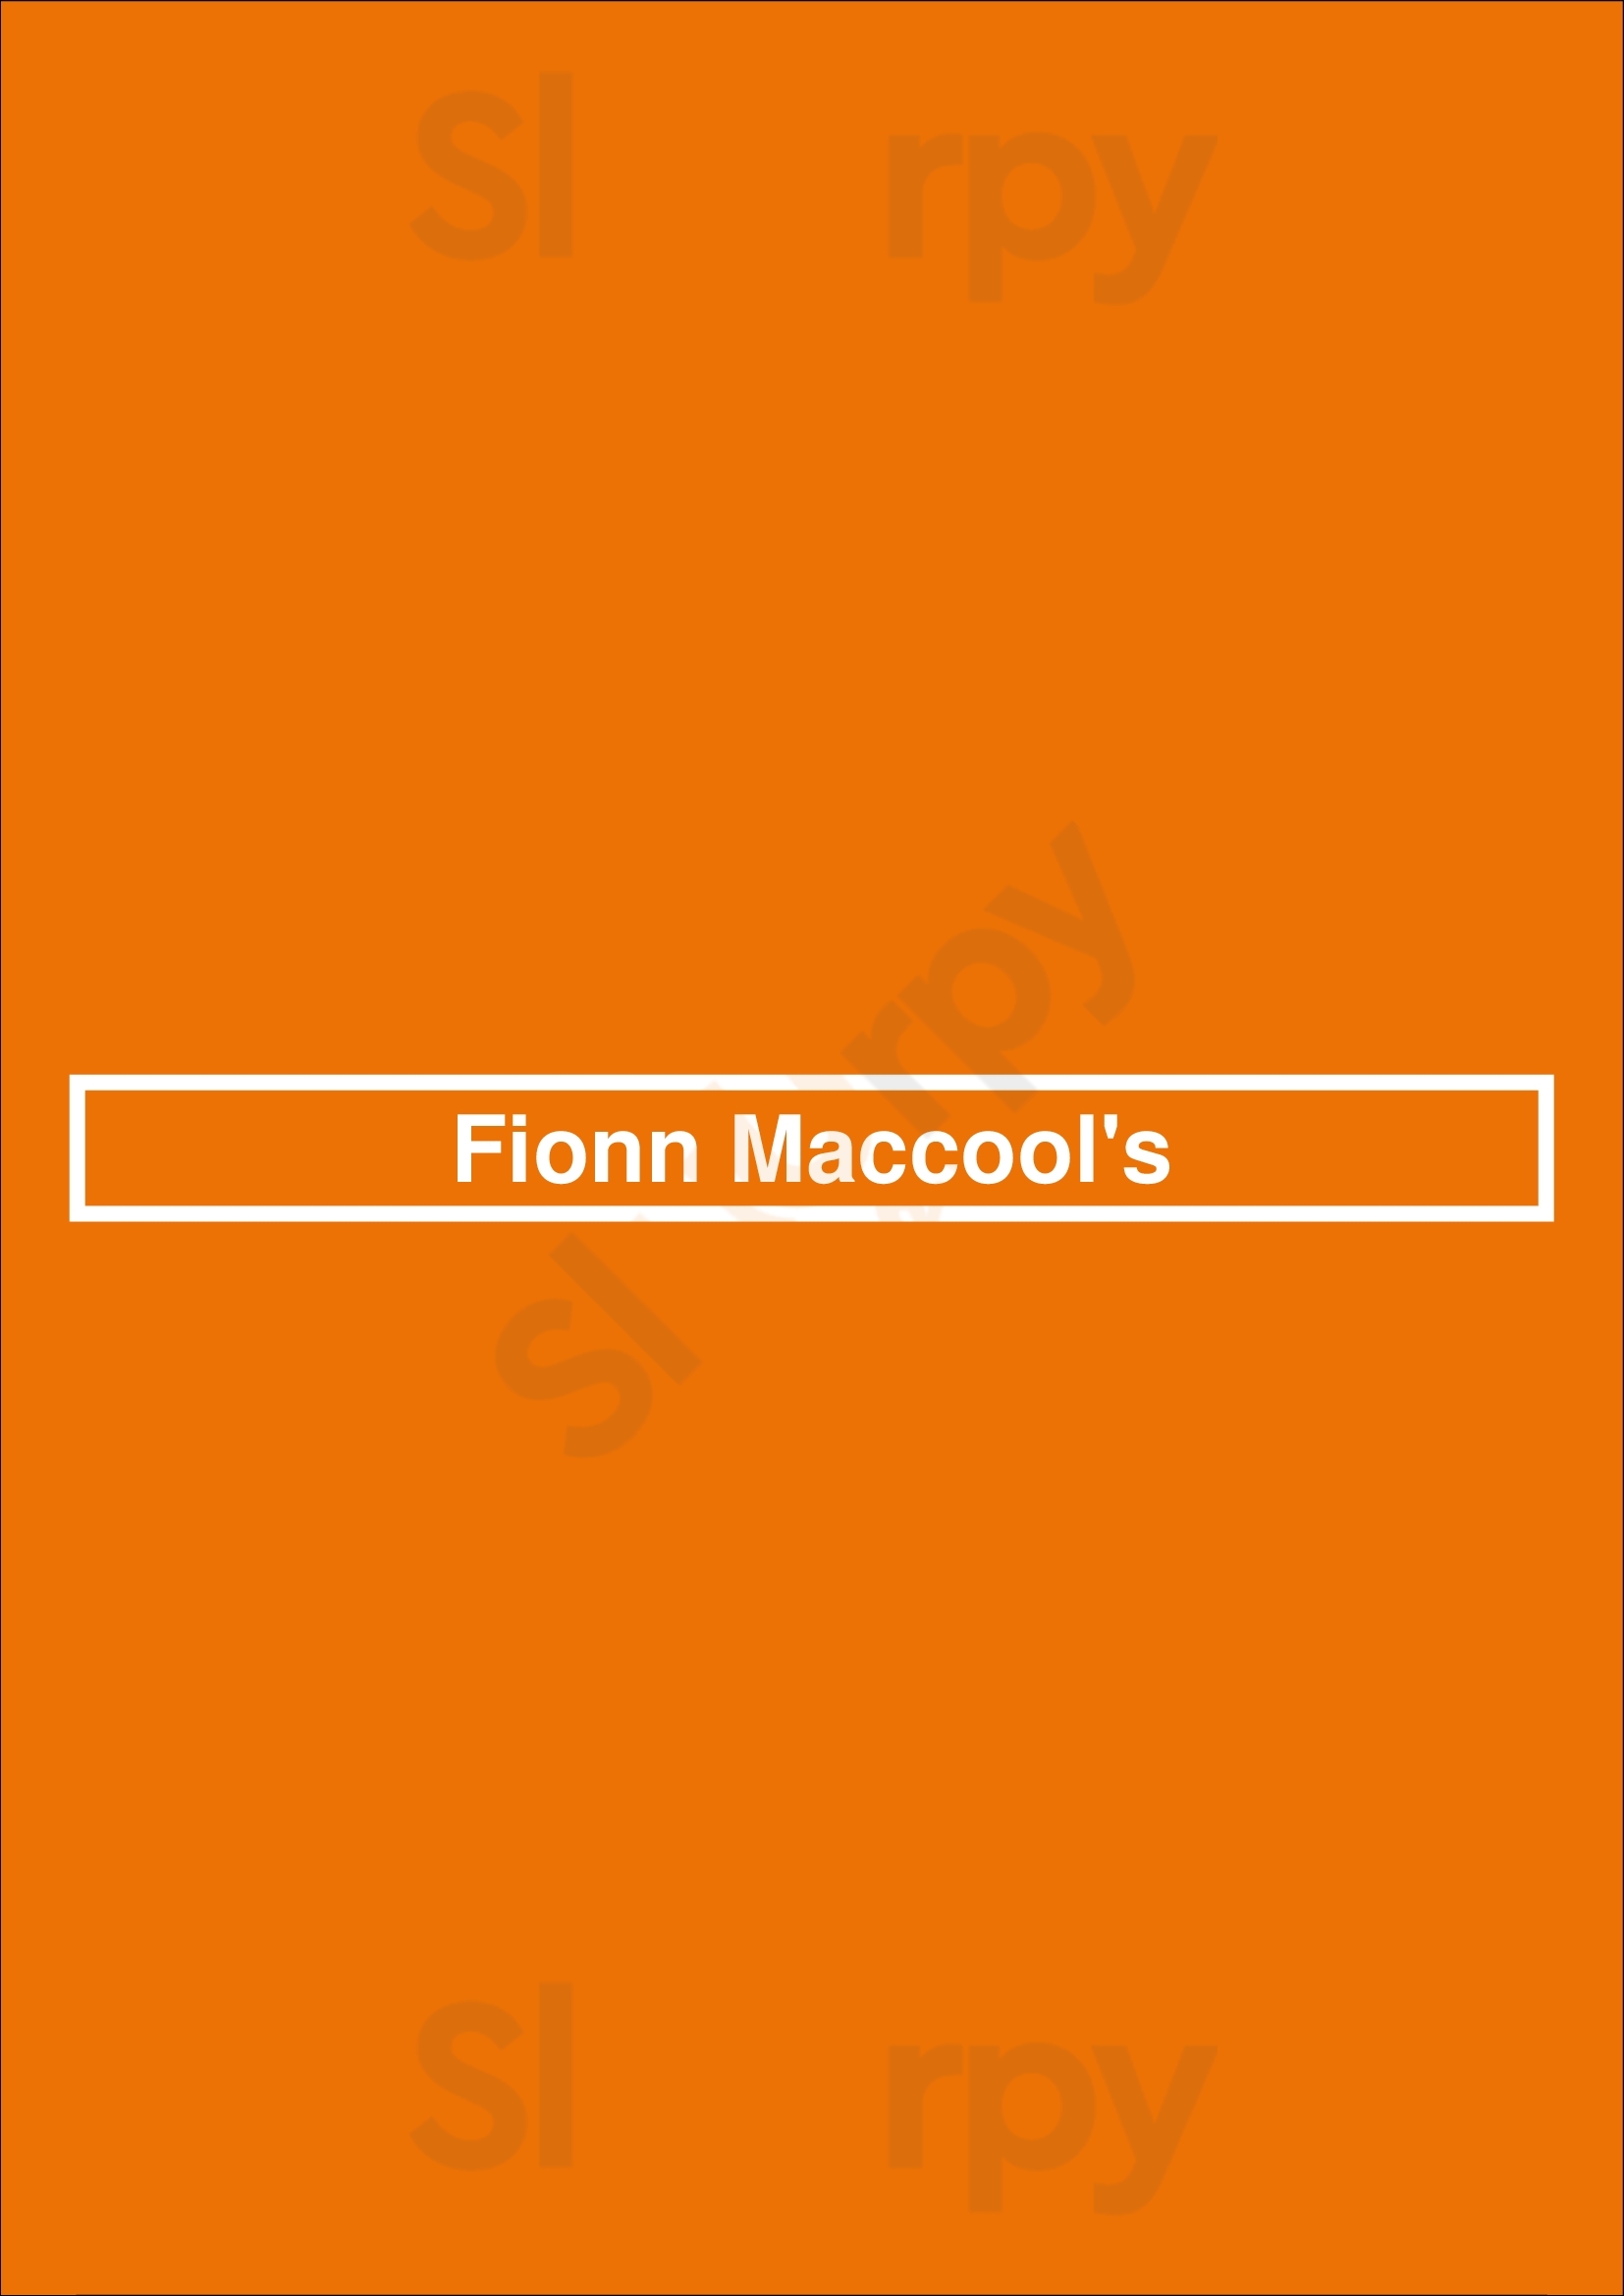 Fionn Maccool's St. John's Menu - 1